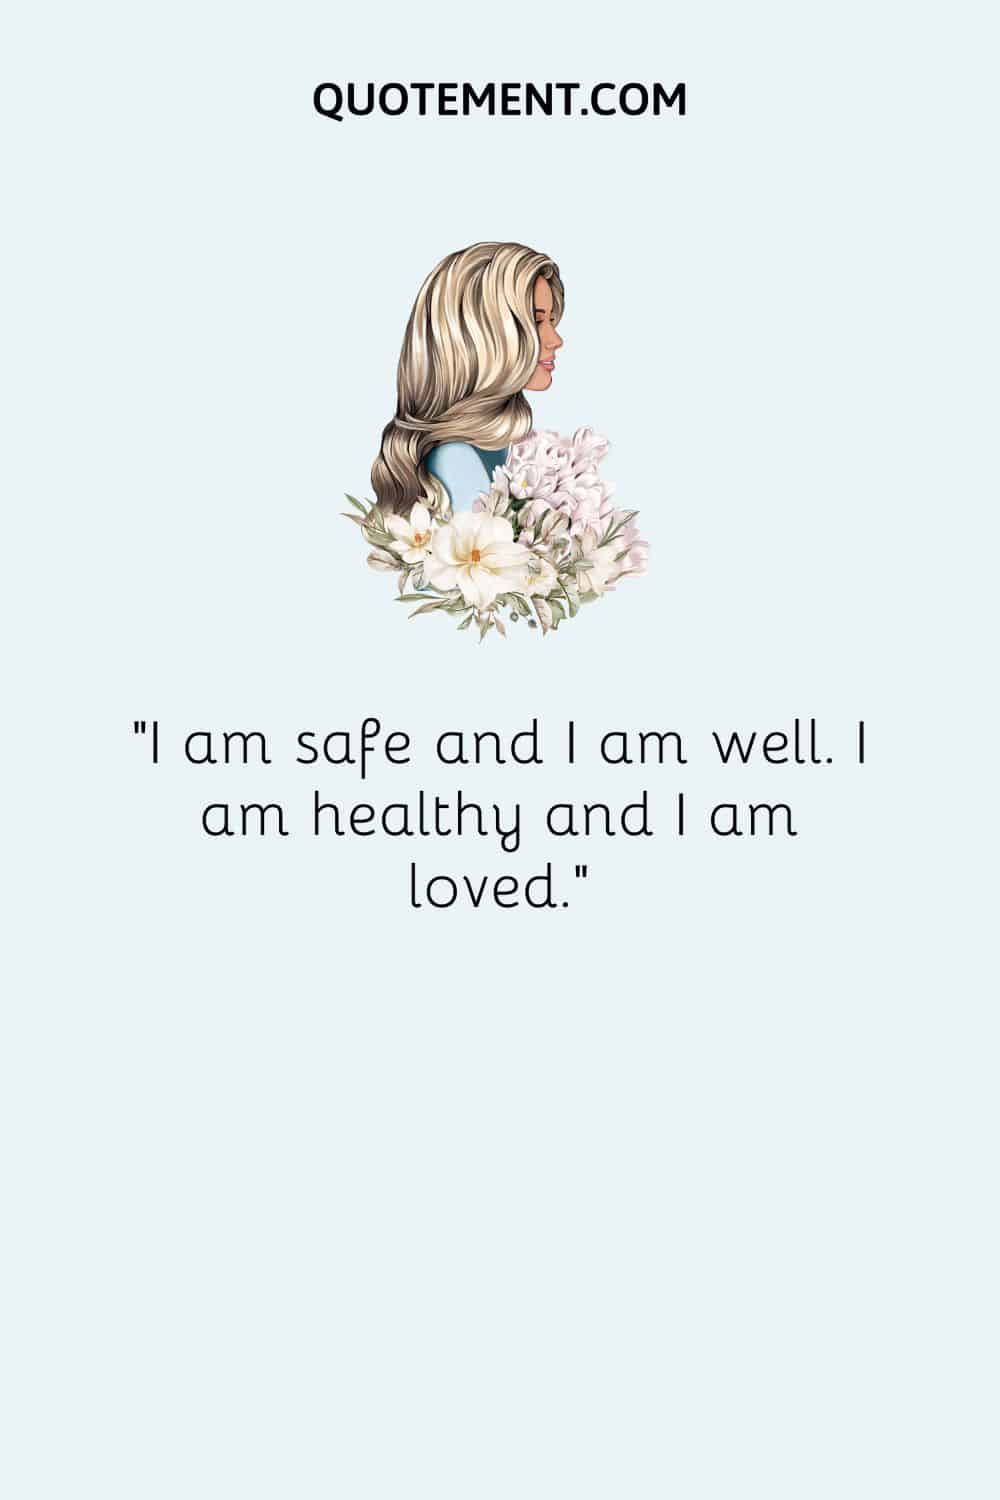 I am safe and I am well. I am healthy and I am loved